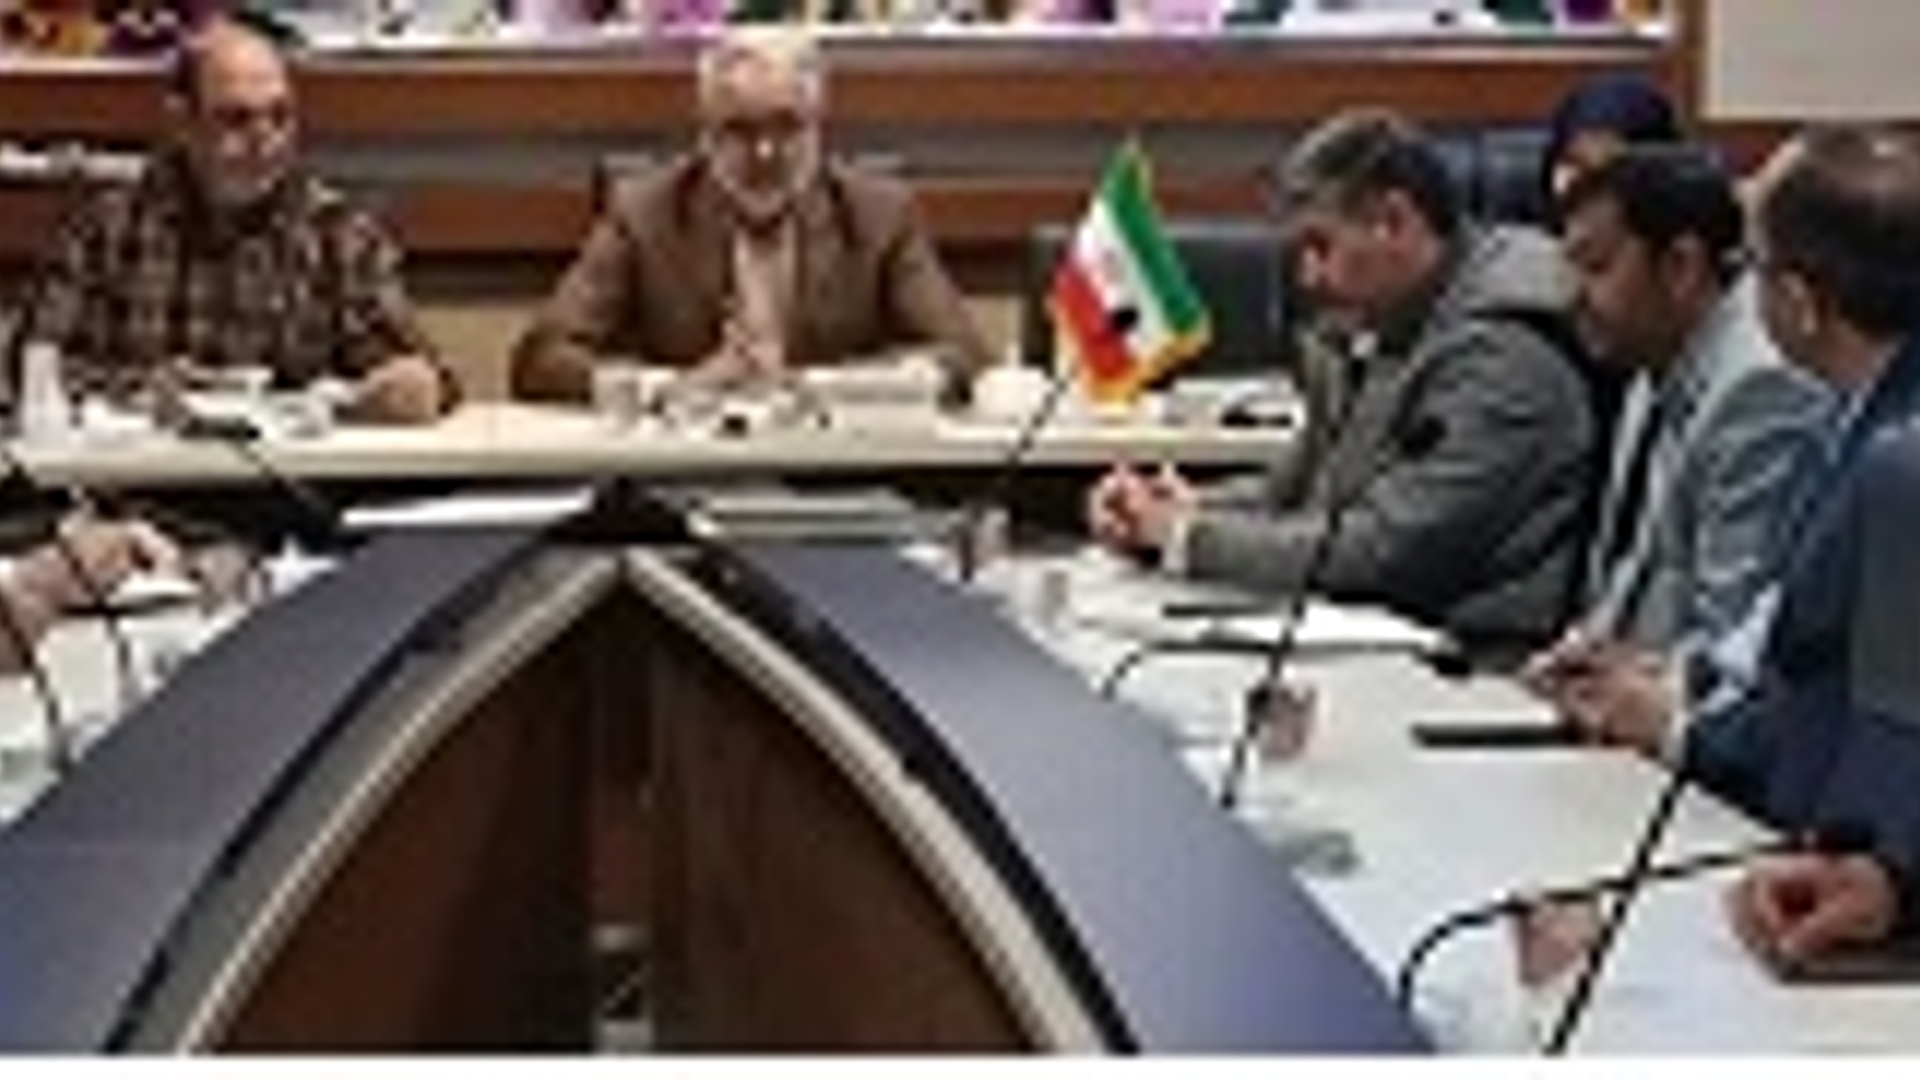 برگزاری جلسه ترویج فرهنگ ایثار و شهادت شهرستان شازند